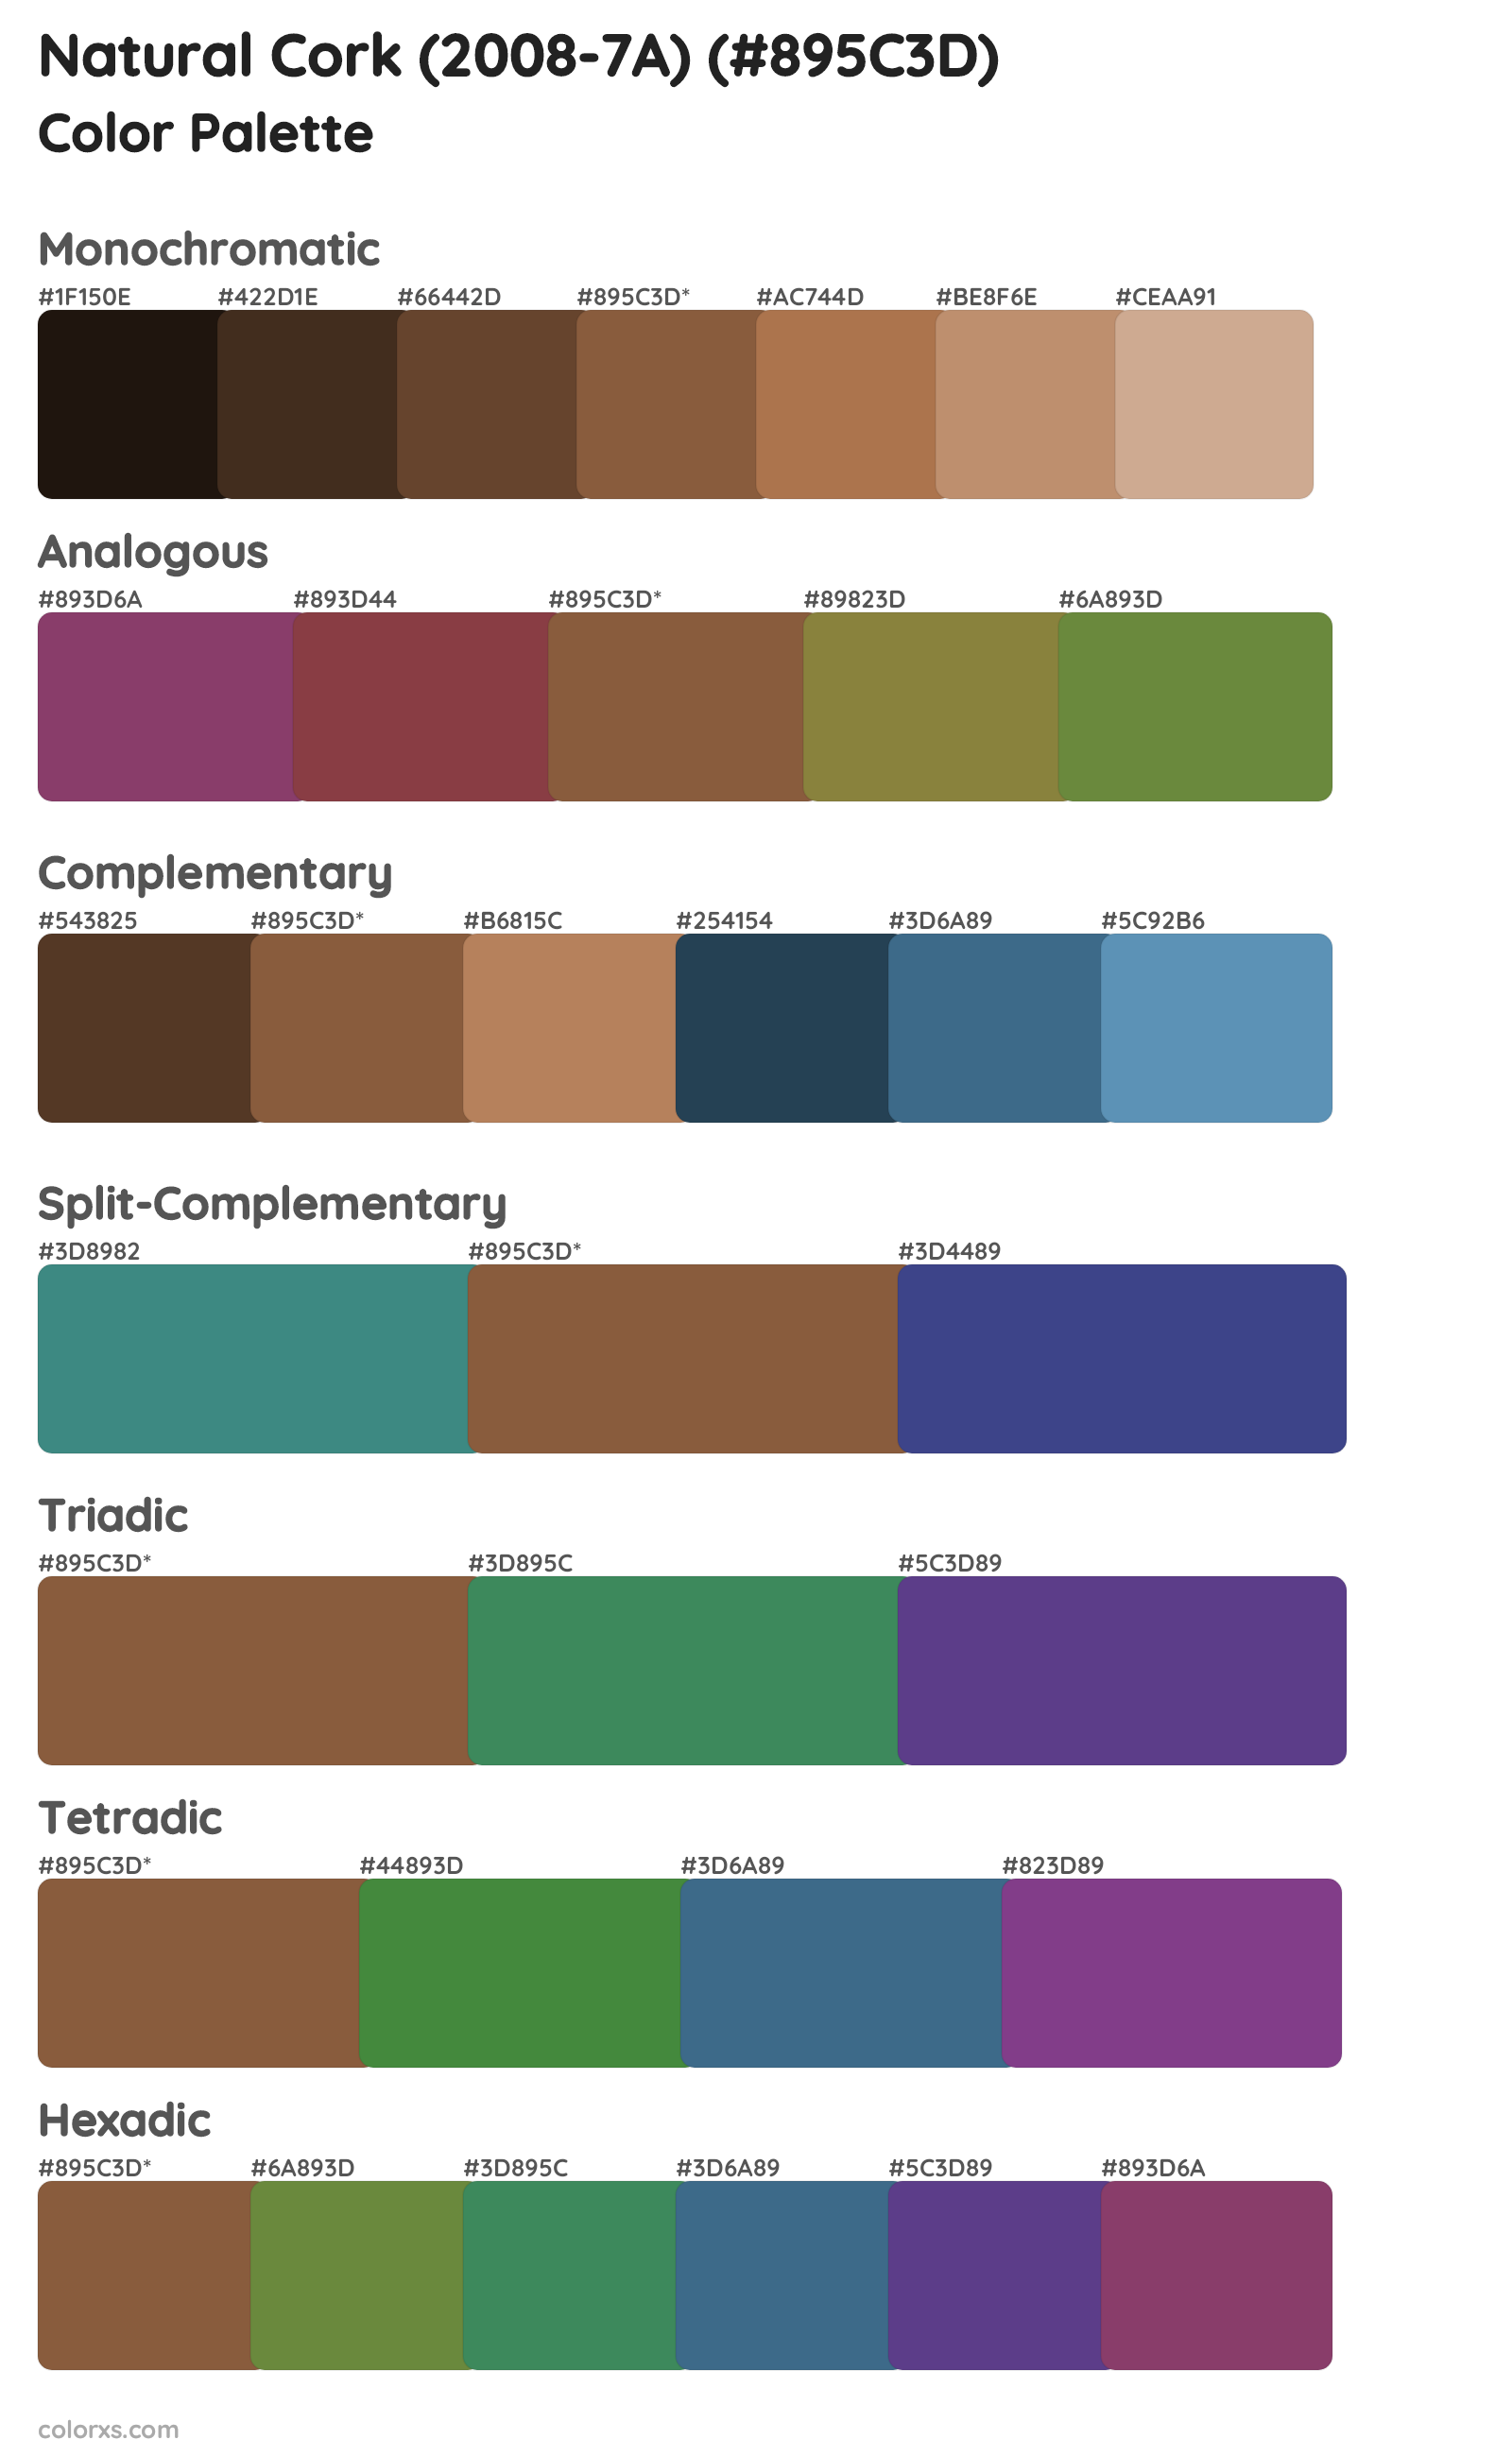 Natural Cork (2008-7A) Color Scheme Palettes